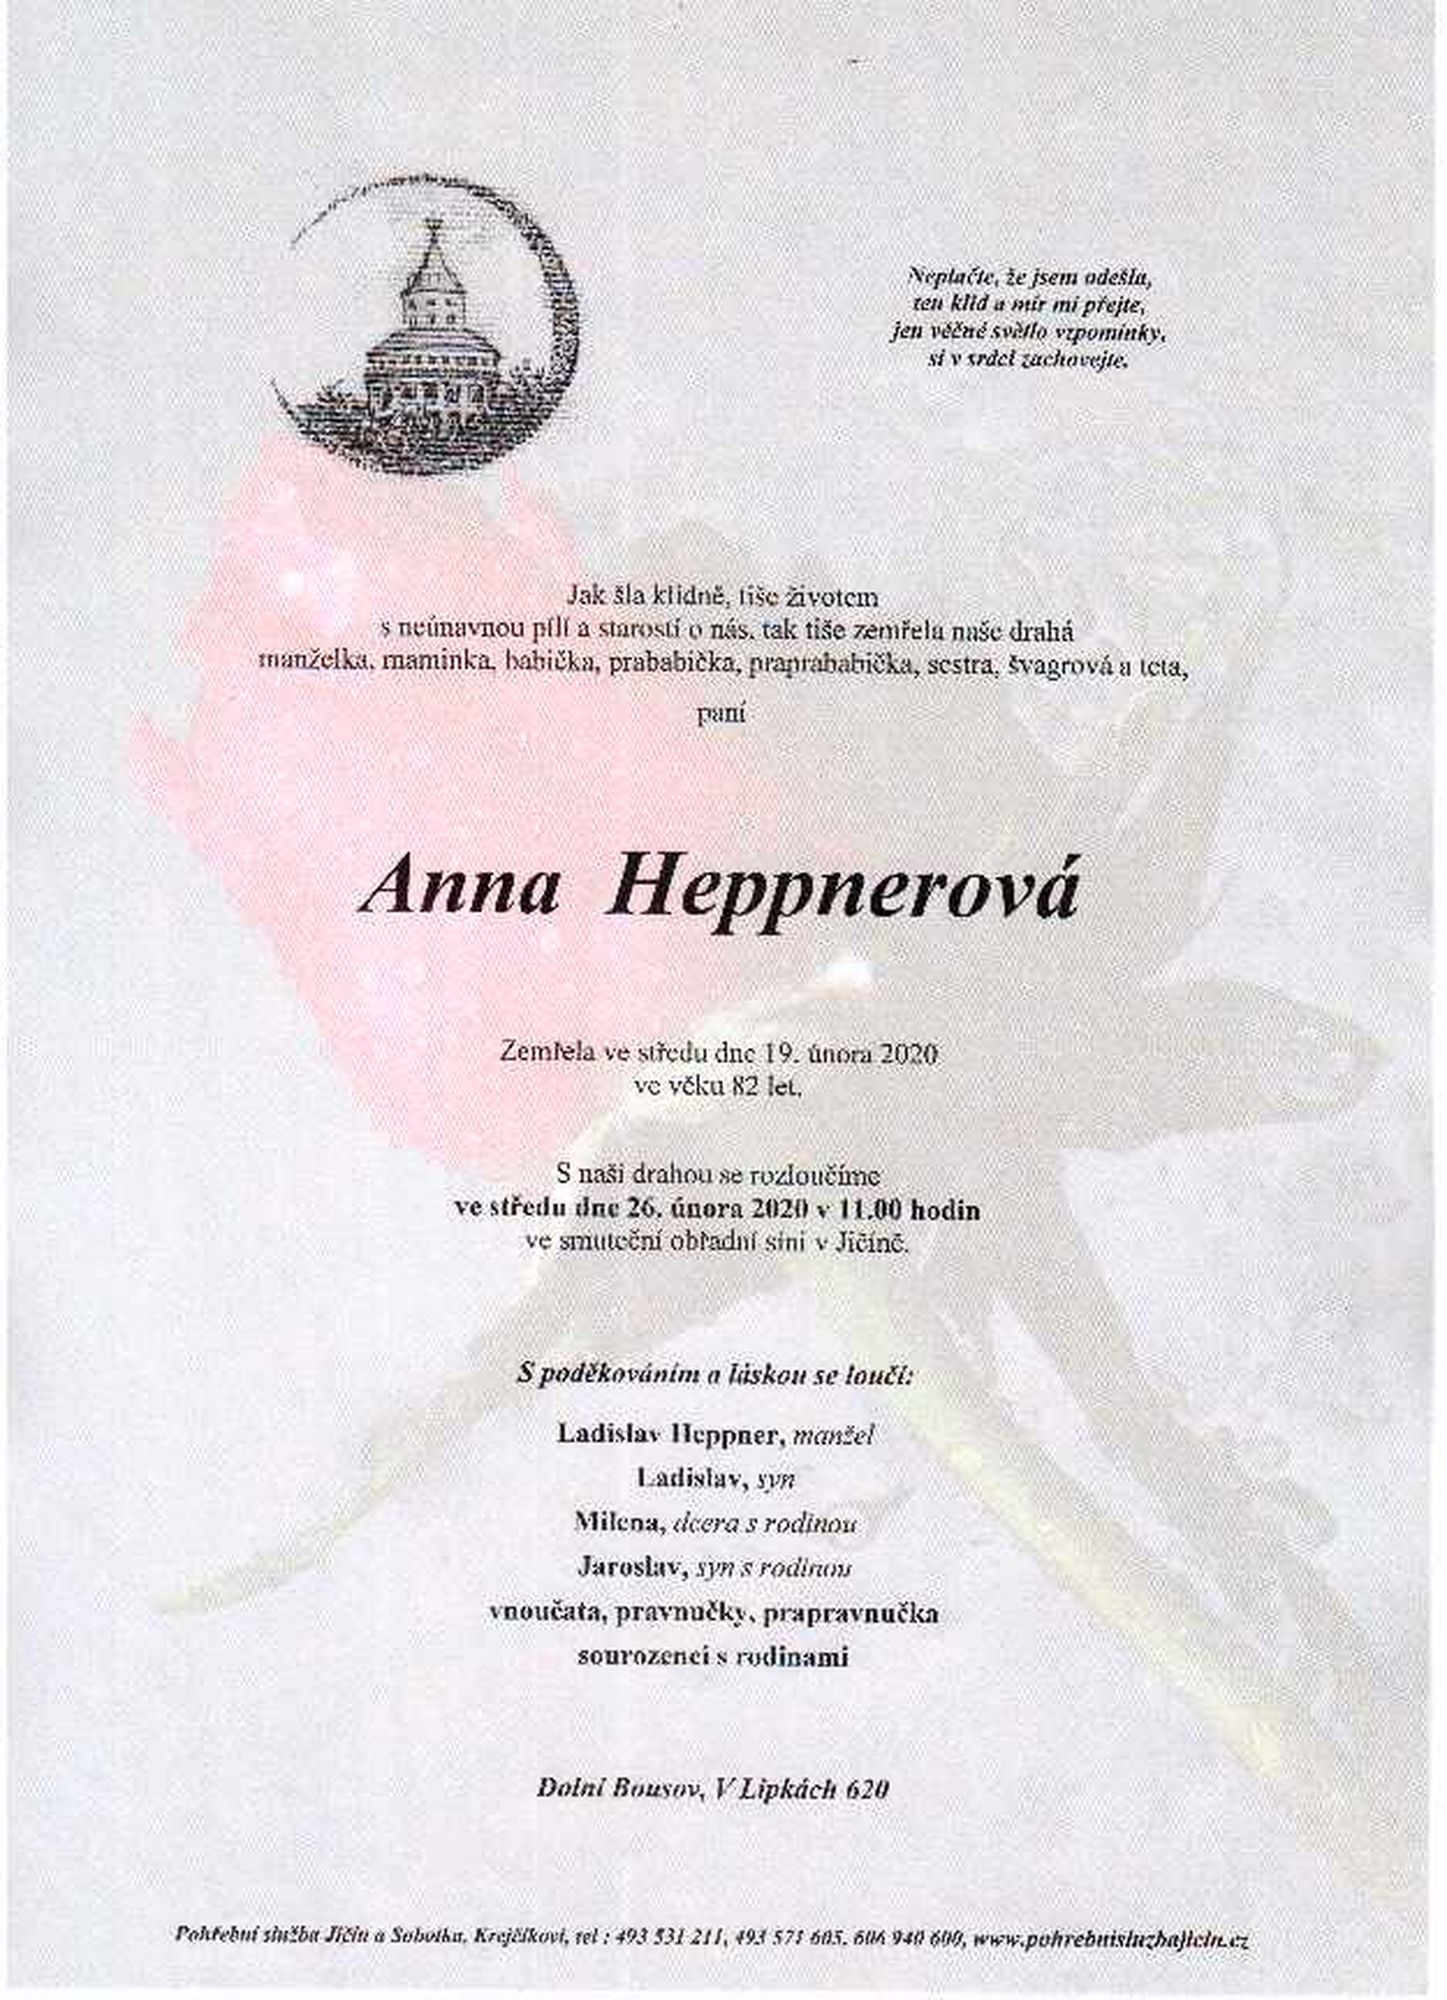 Anna Heppnerová